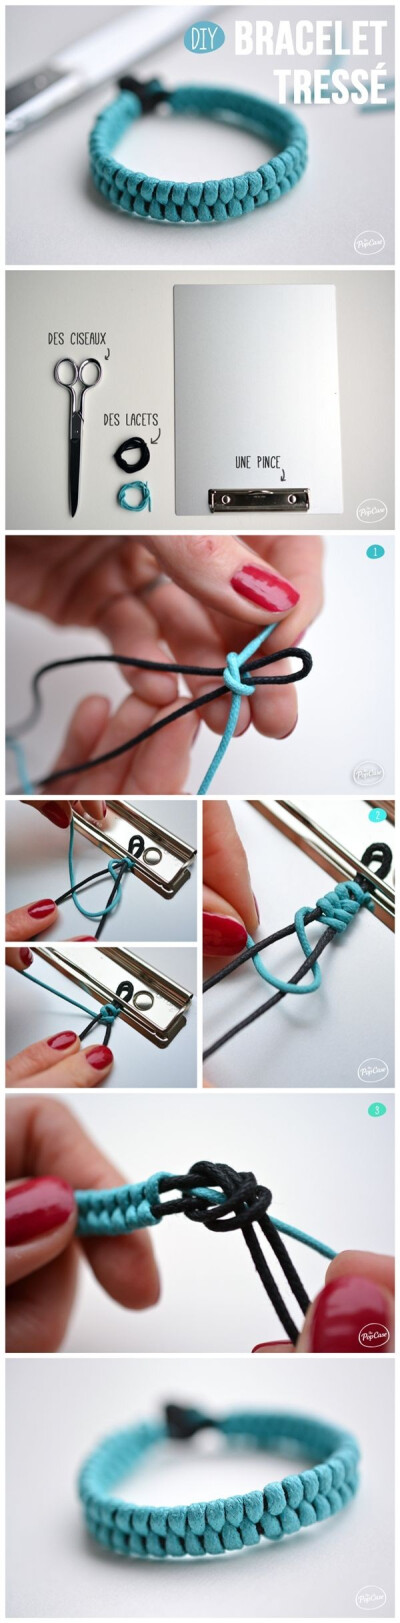 夏日清爽皮绳手串手绳手工编织教程 简洁大方又美观